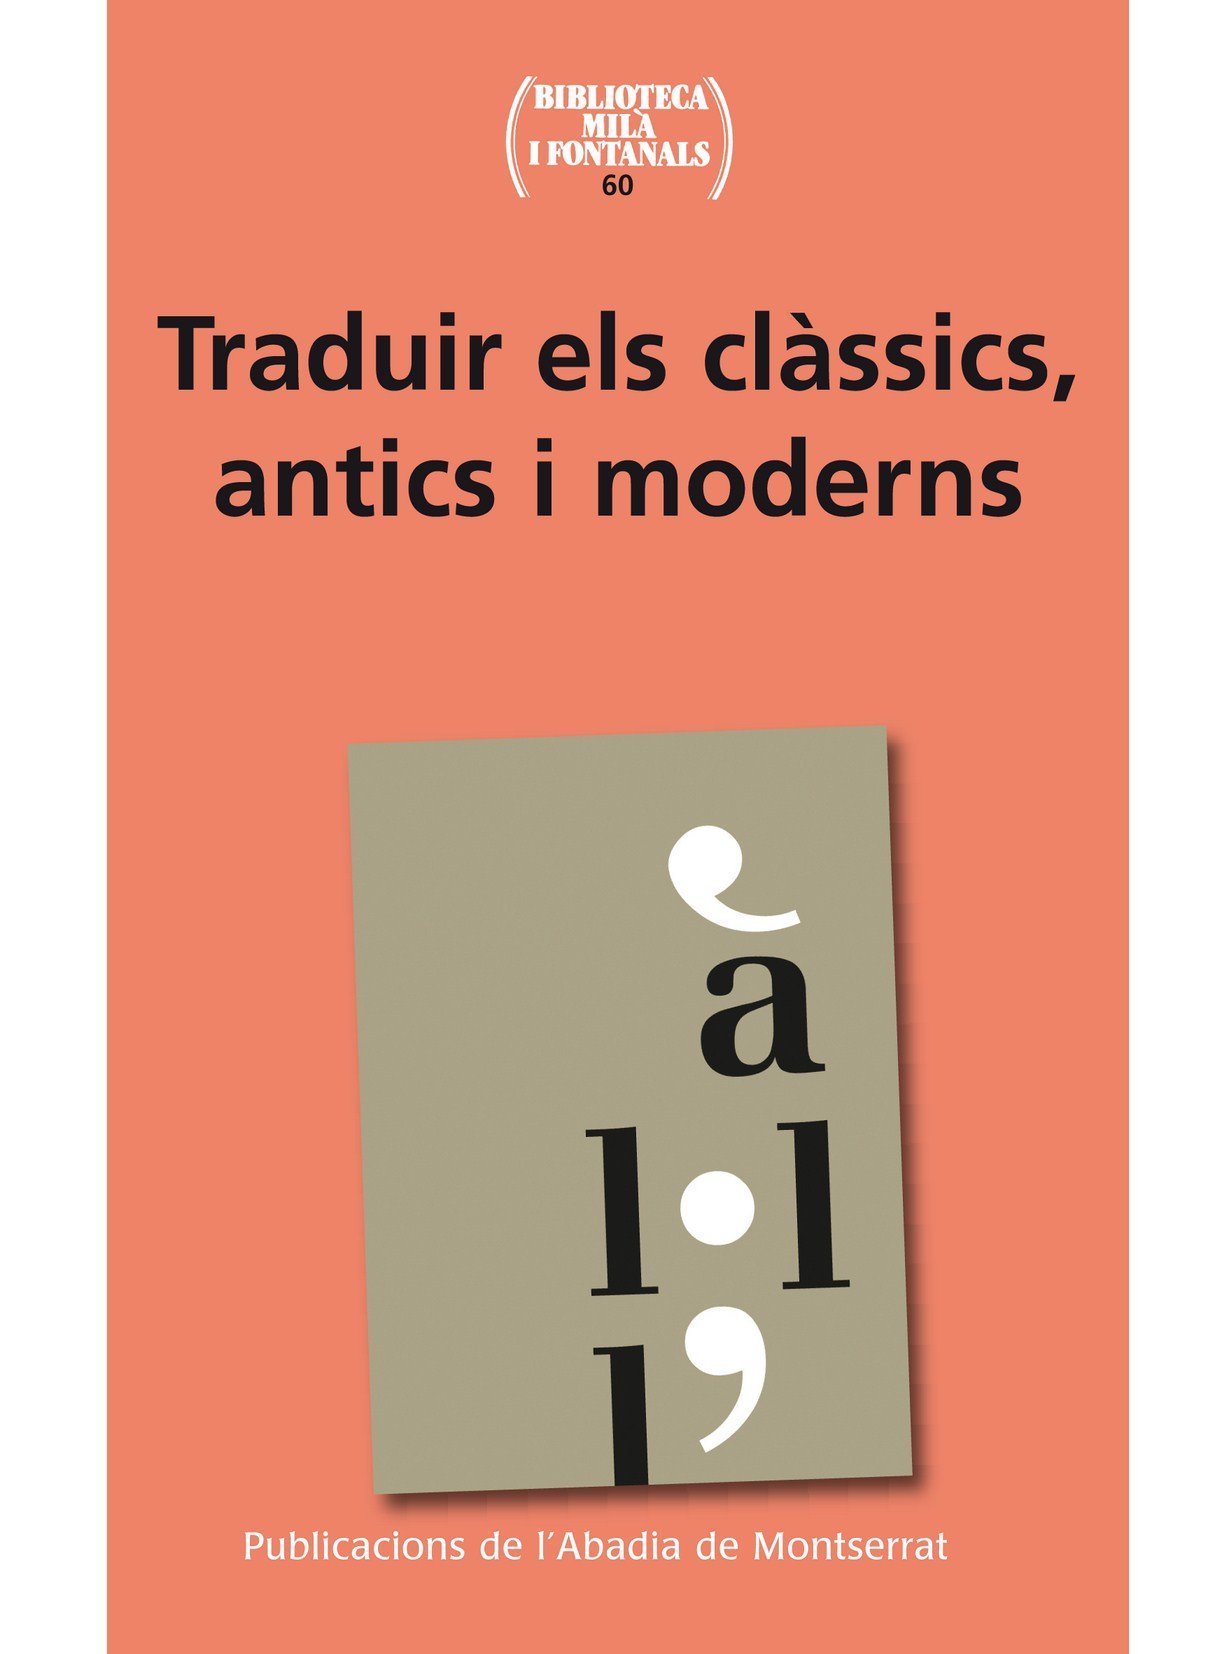 Imagen de portada del libro Traduir els clàssics, antics i moderns